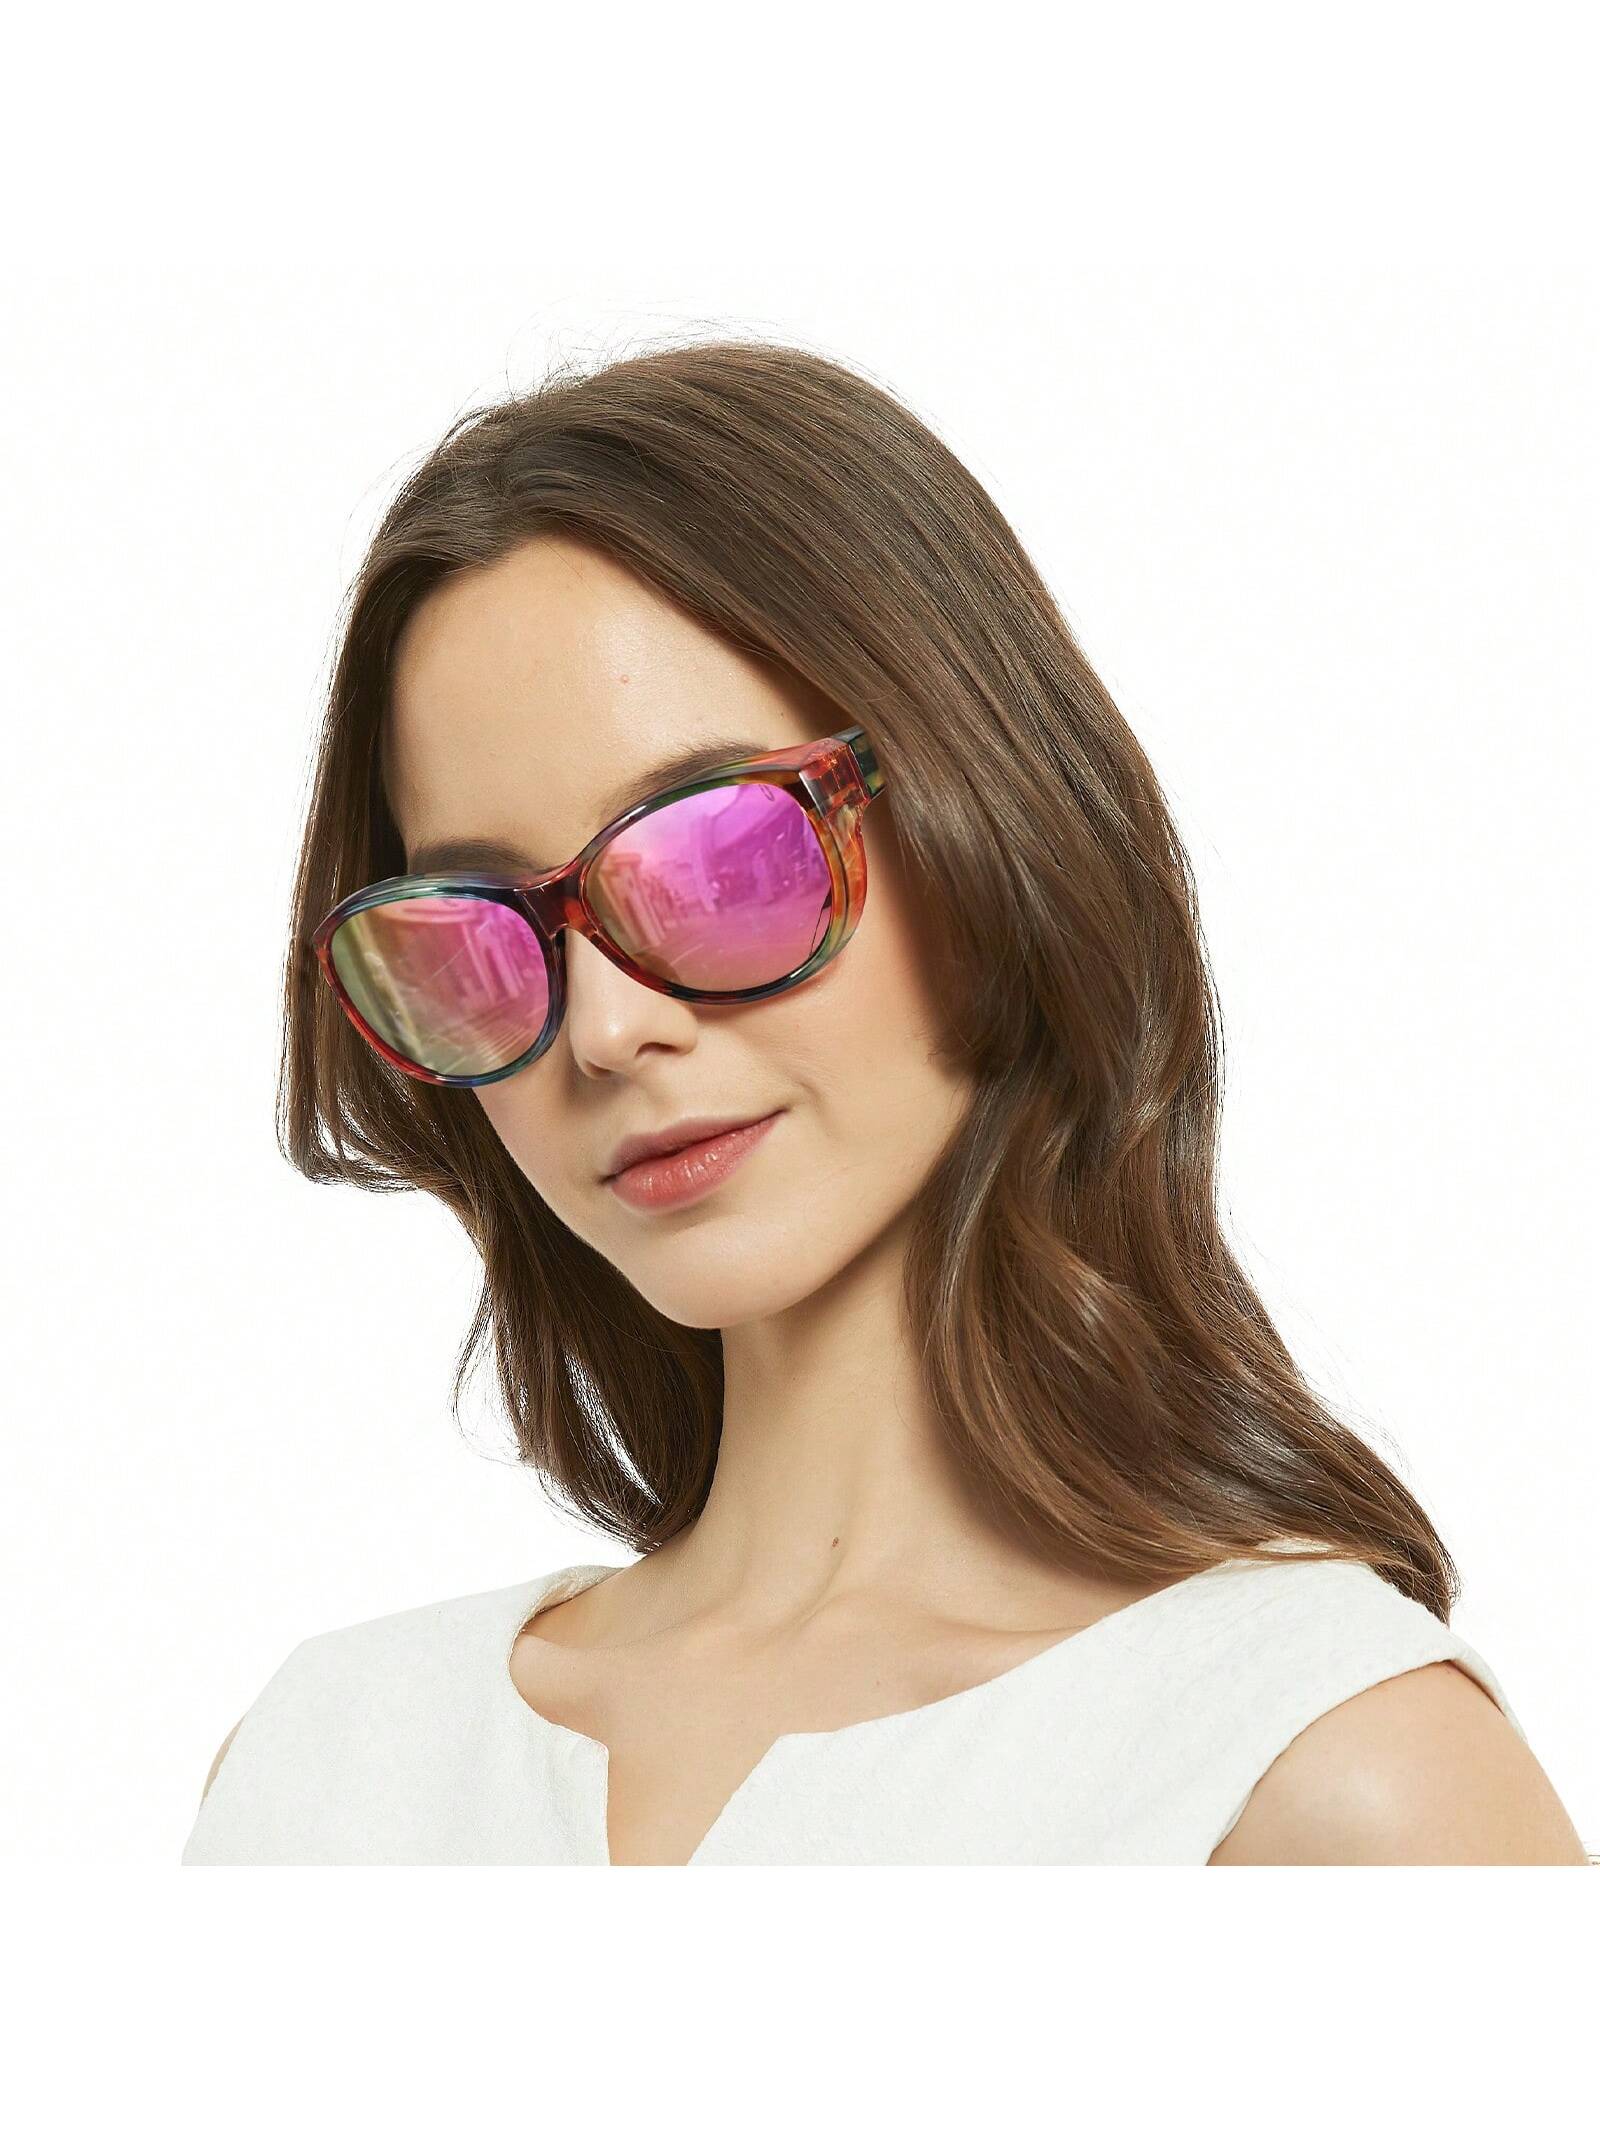 LVIOE 1 пара поляризованных солнцезащитных очков для женщин и мужчин разоблачение поляризованных солнцезащитных очков blenders eyewear цвет future ruler pol